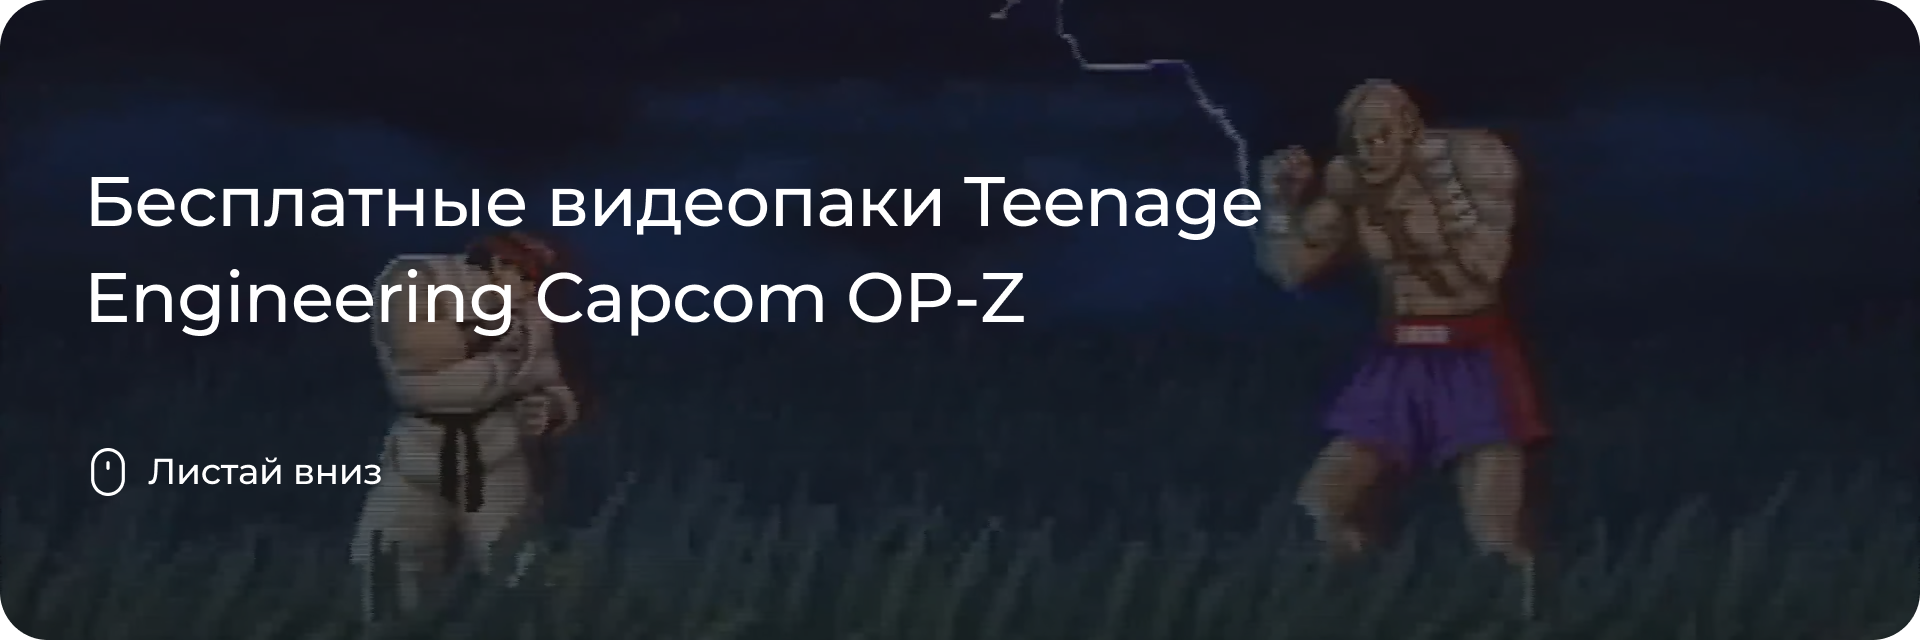 Видеопаки Teenage Engineering Capcom OP-Z